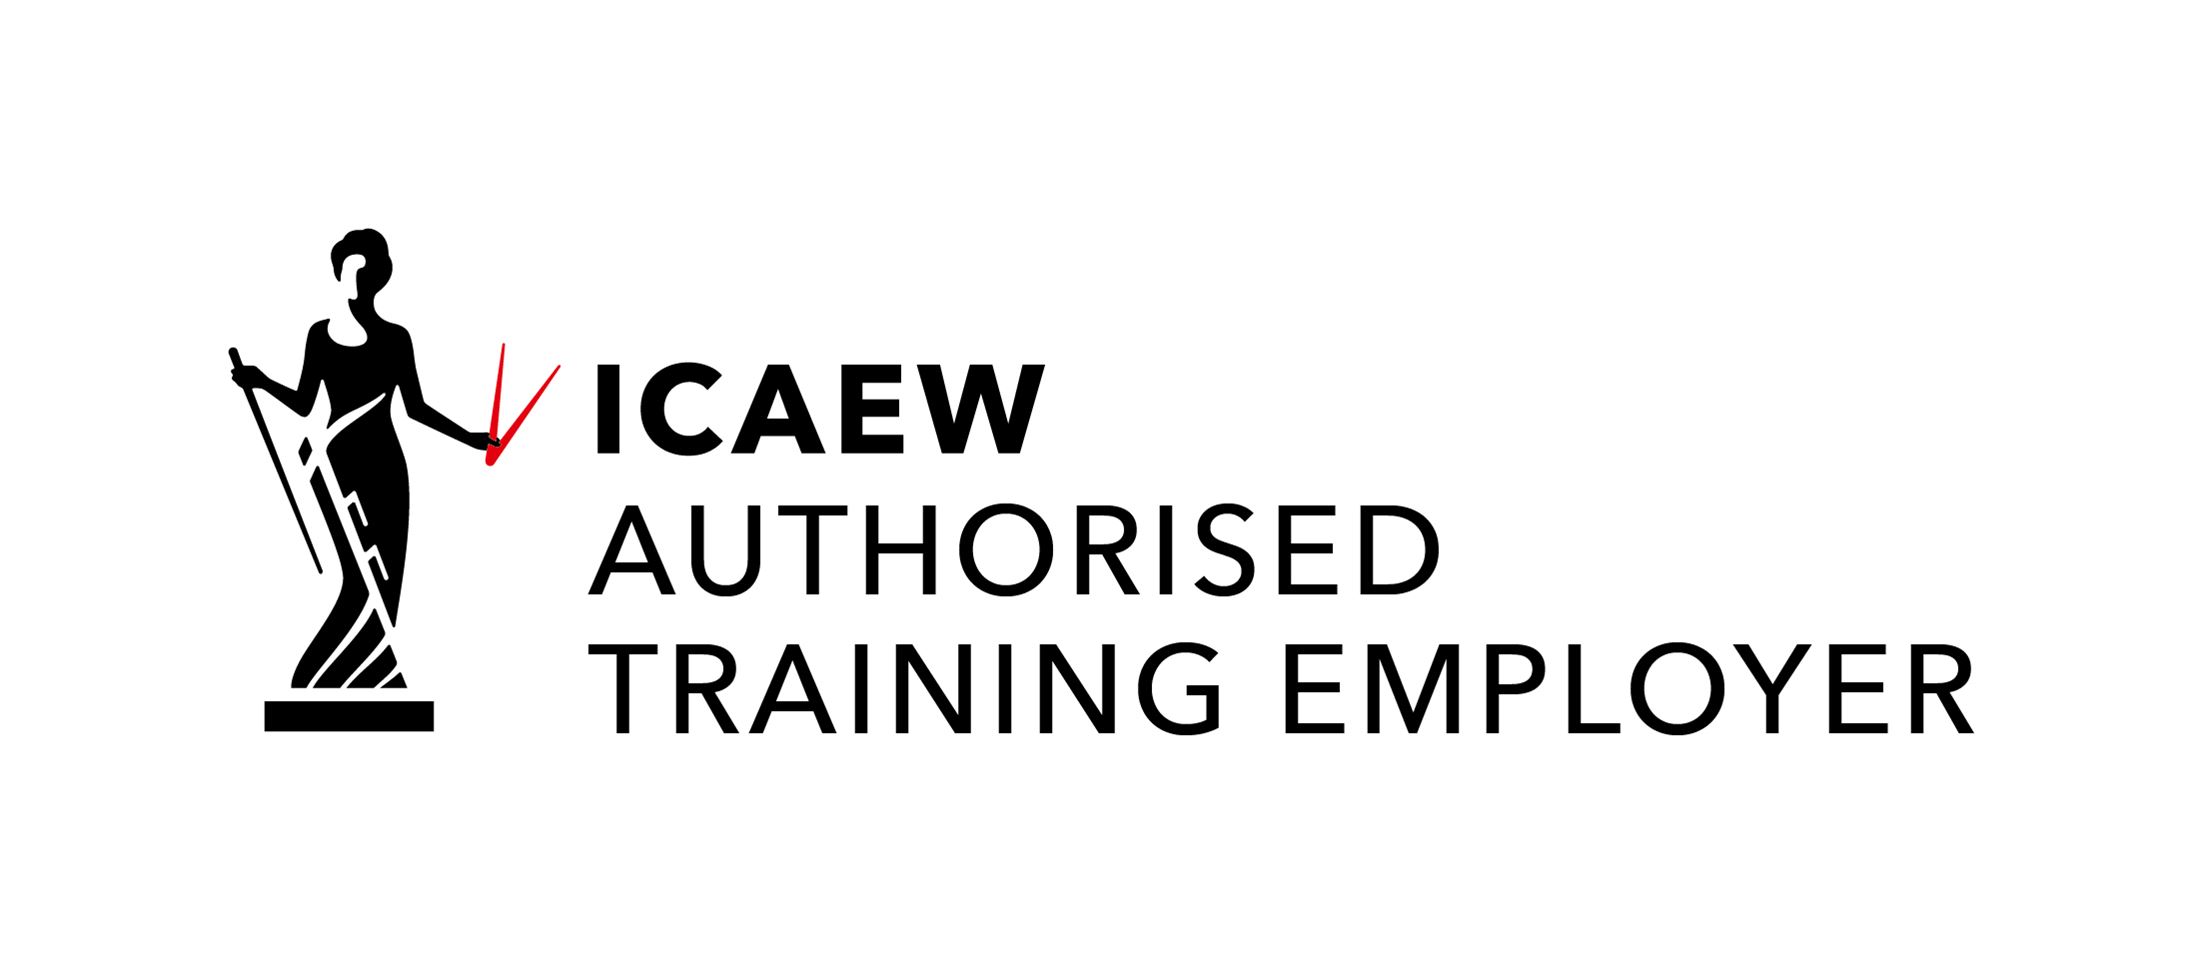 ICAEW_Authorised_Training_Employer_UK_BLK